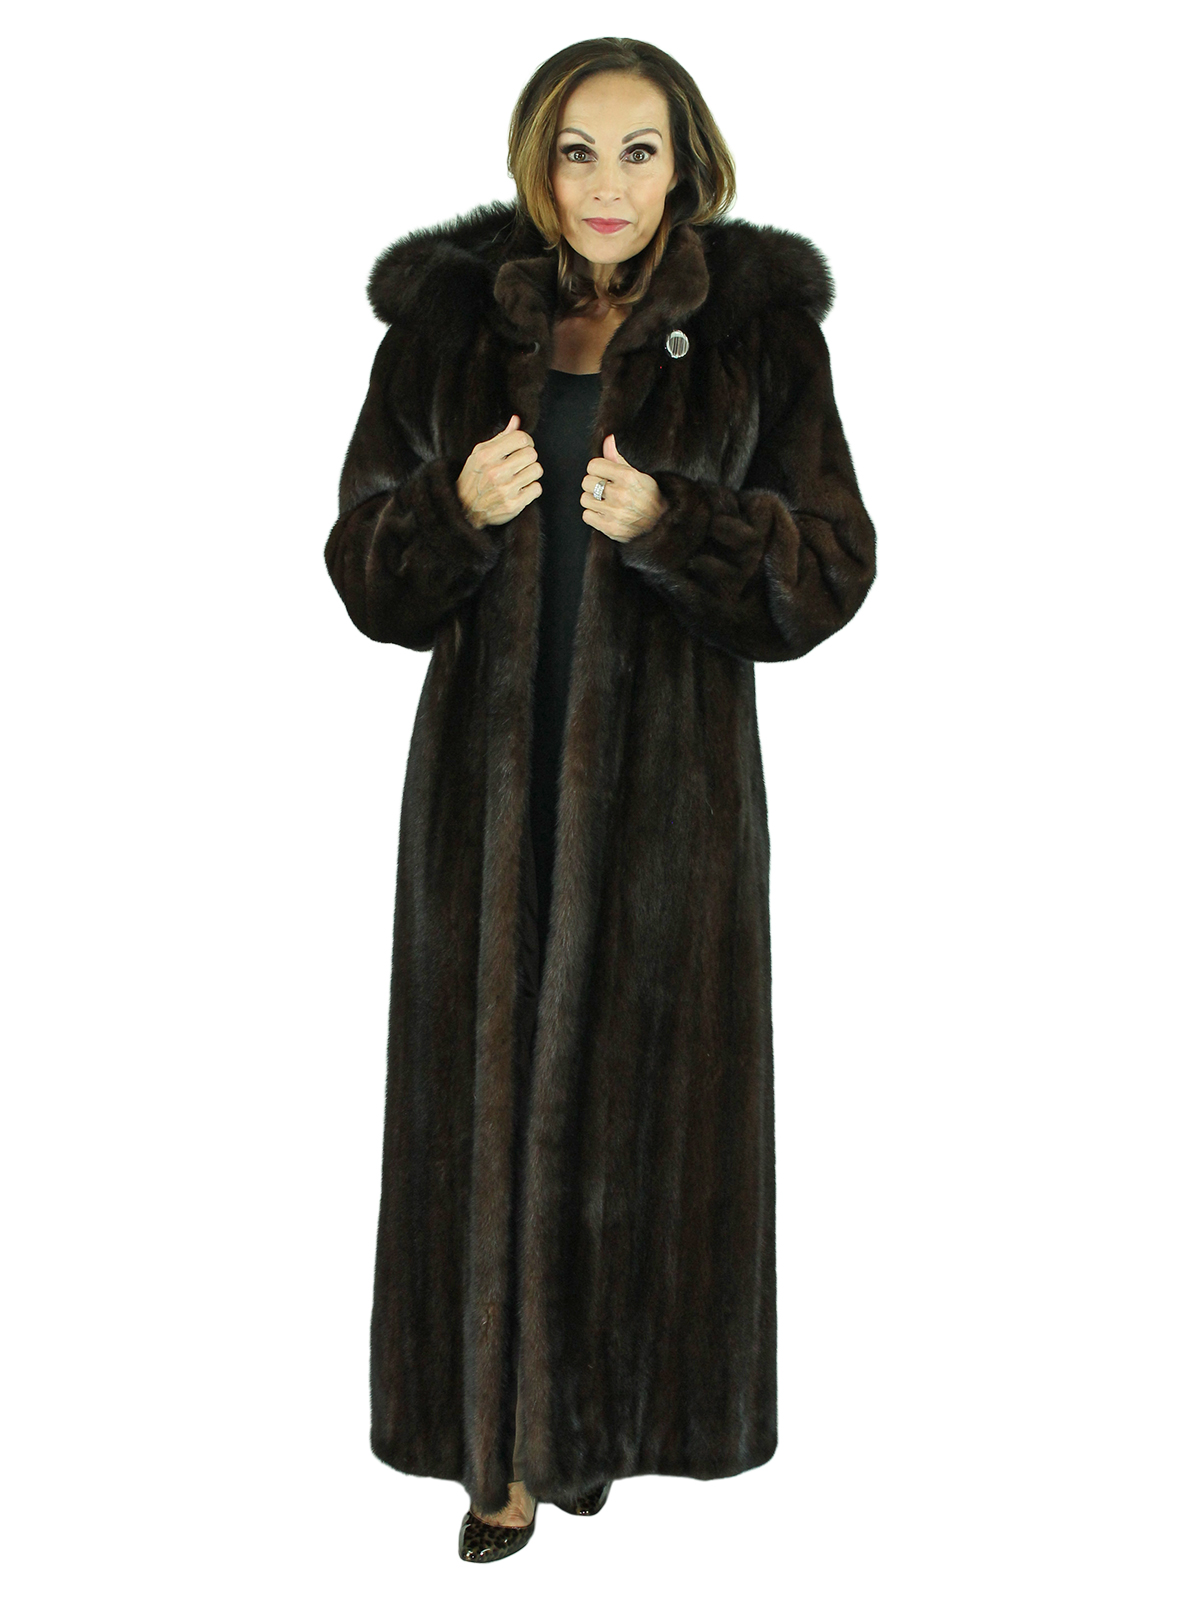 detachable fur coat